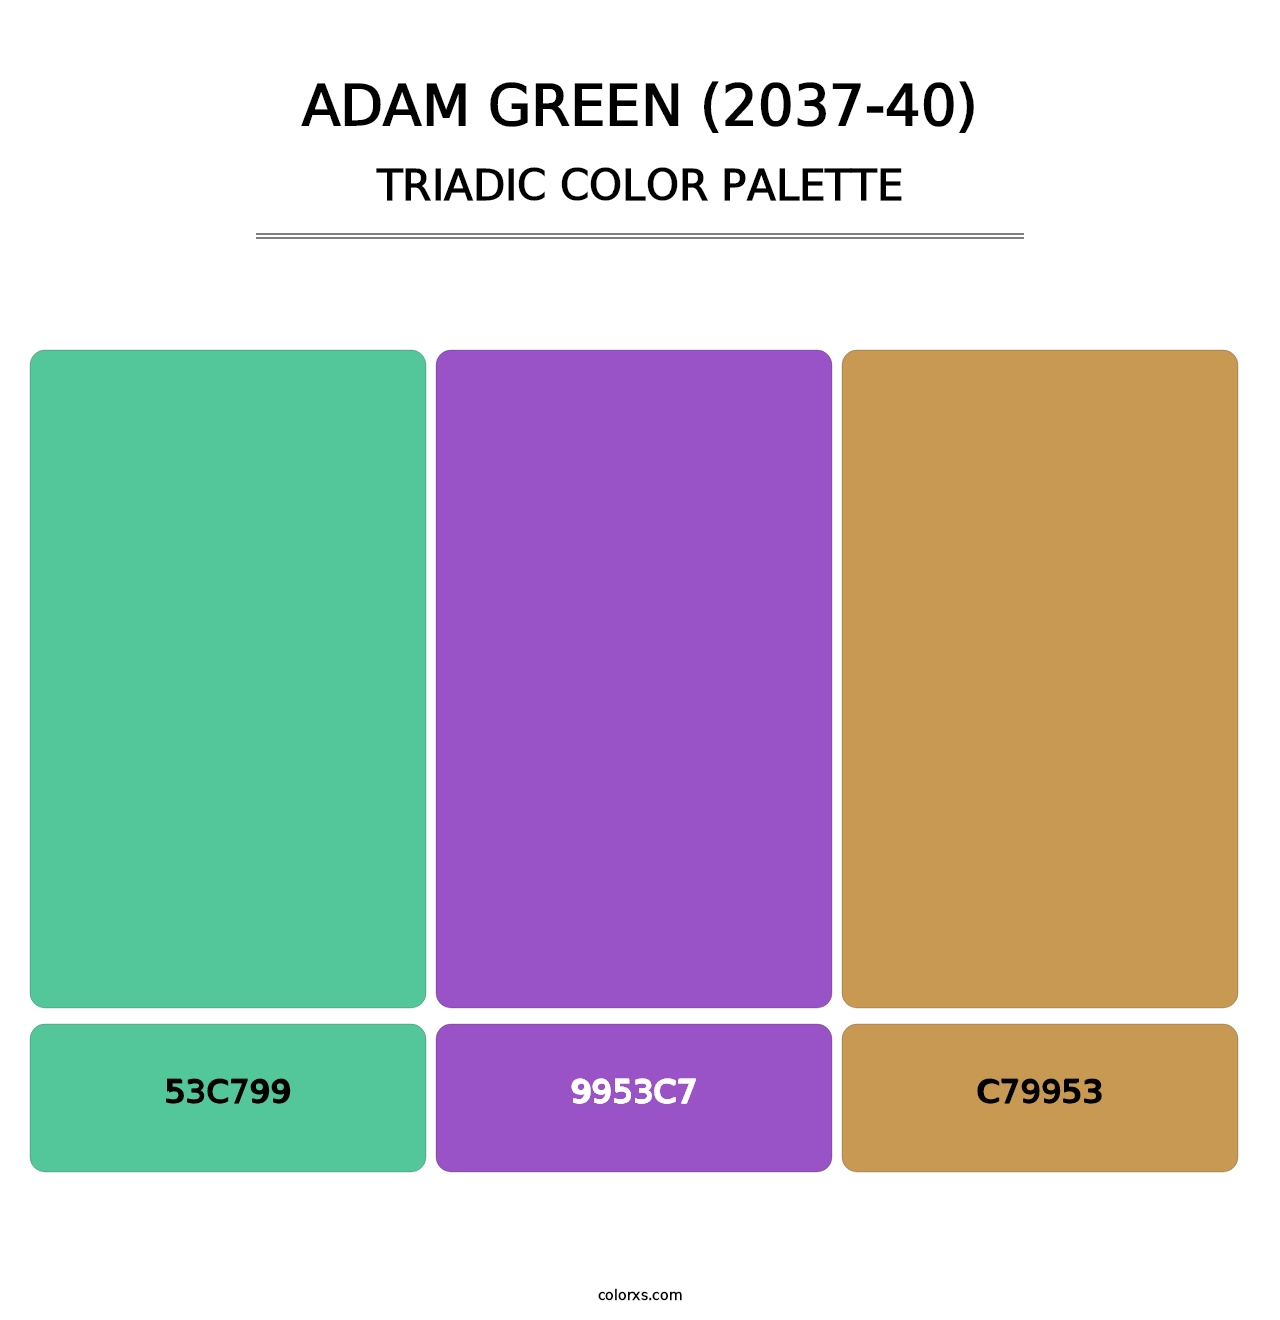 Adam Green (2037-40) - Triadic Color Palette